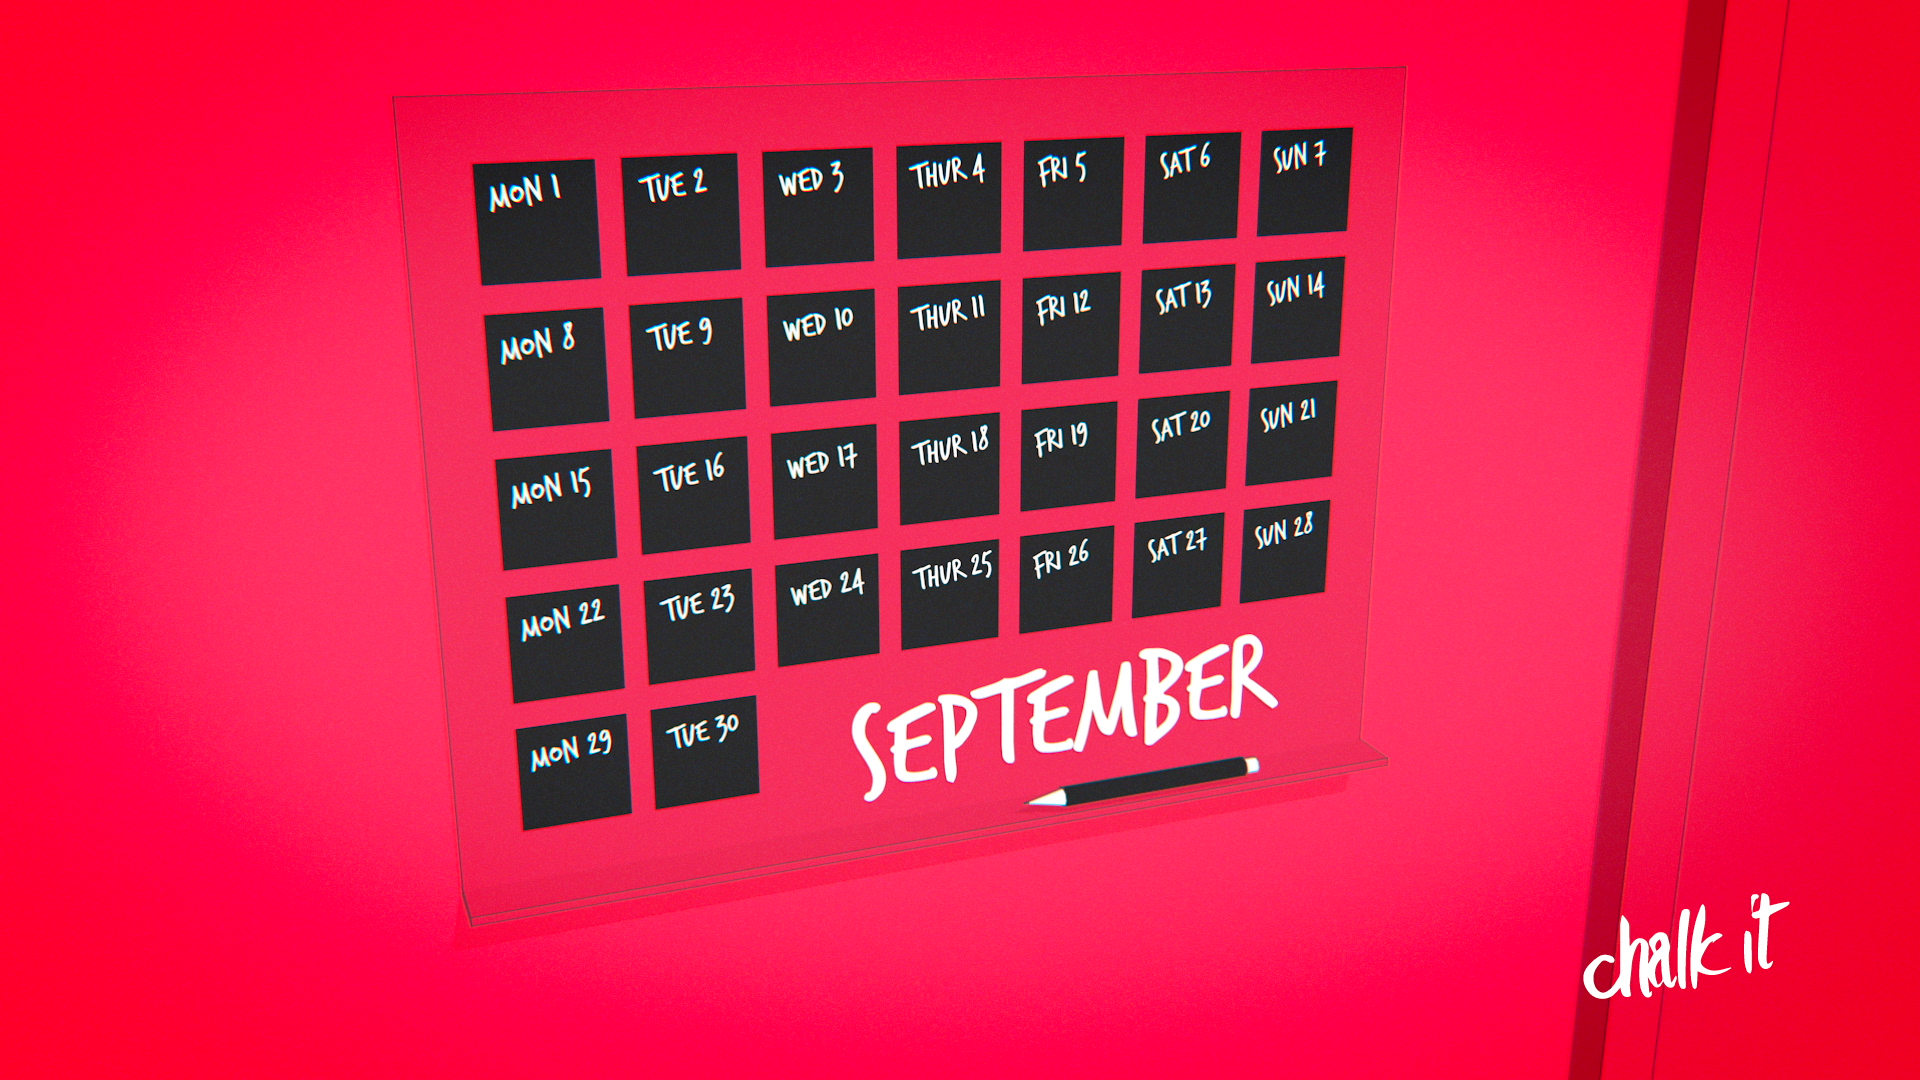 Das Beispiel zeigt einen grafisch abstrahierten Kalender des Monats September.